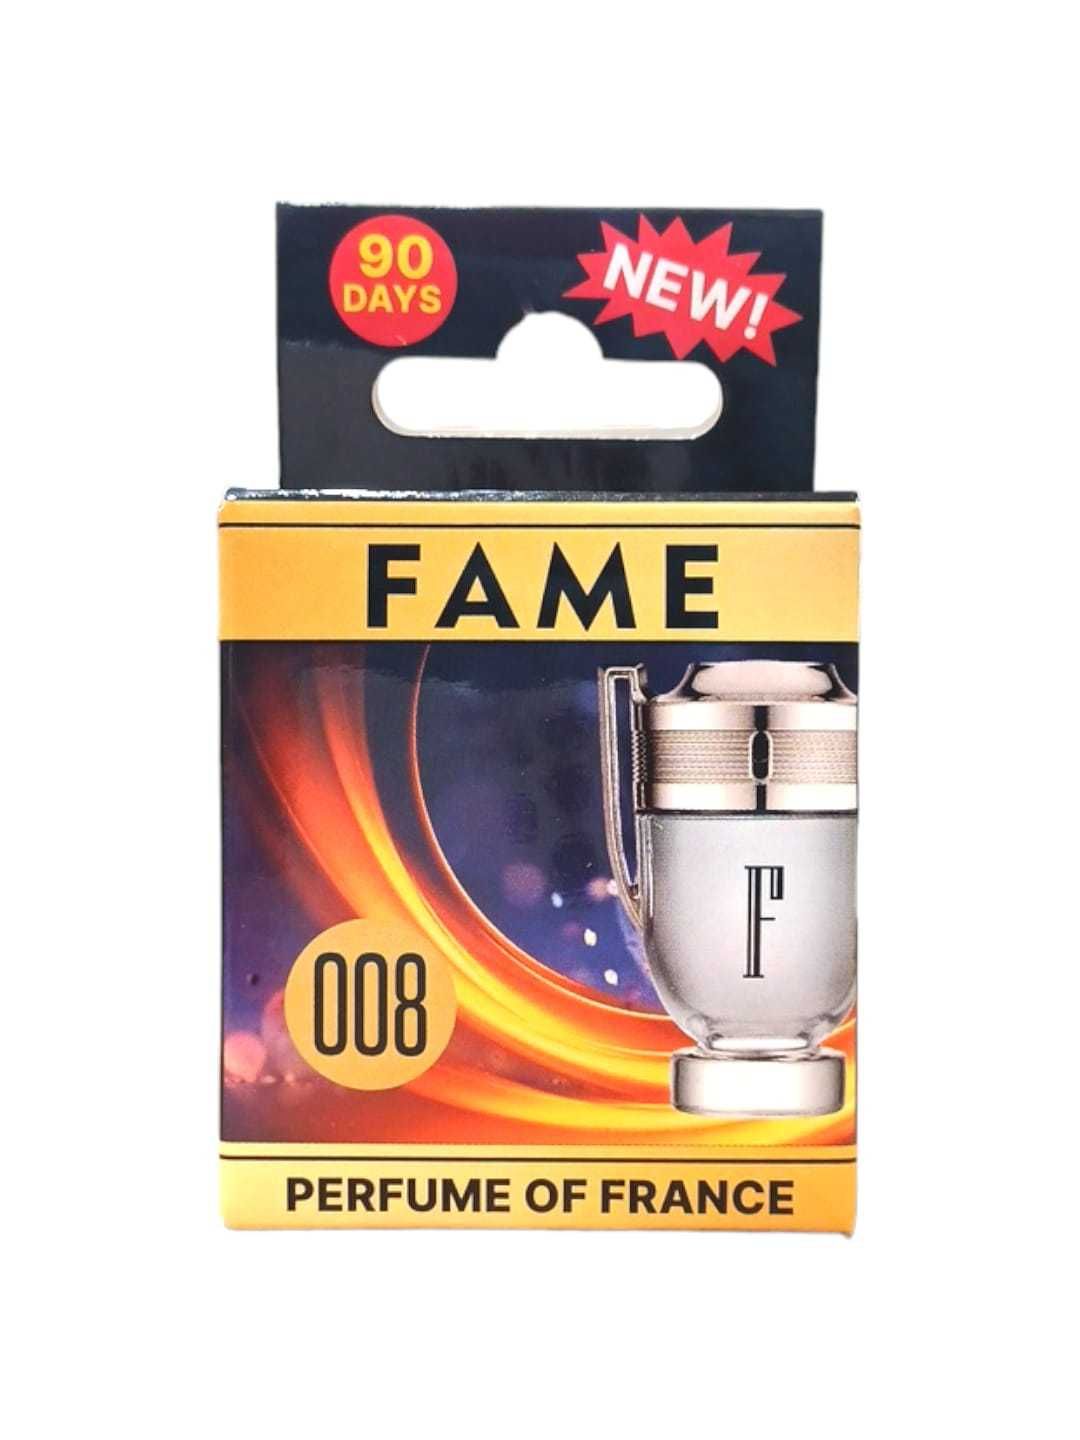 Fame 008 zawieszka zapachowa do auta 10 ml